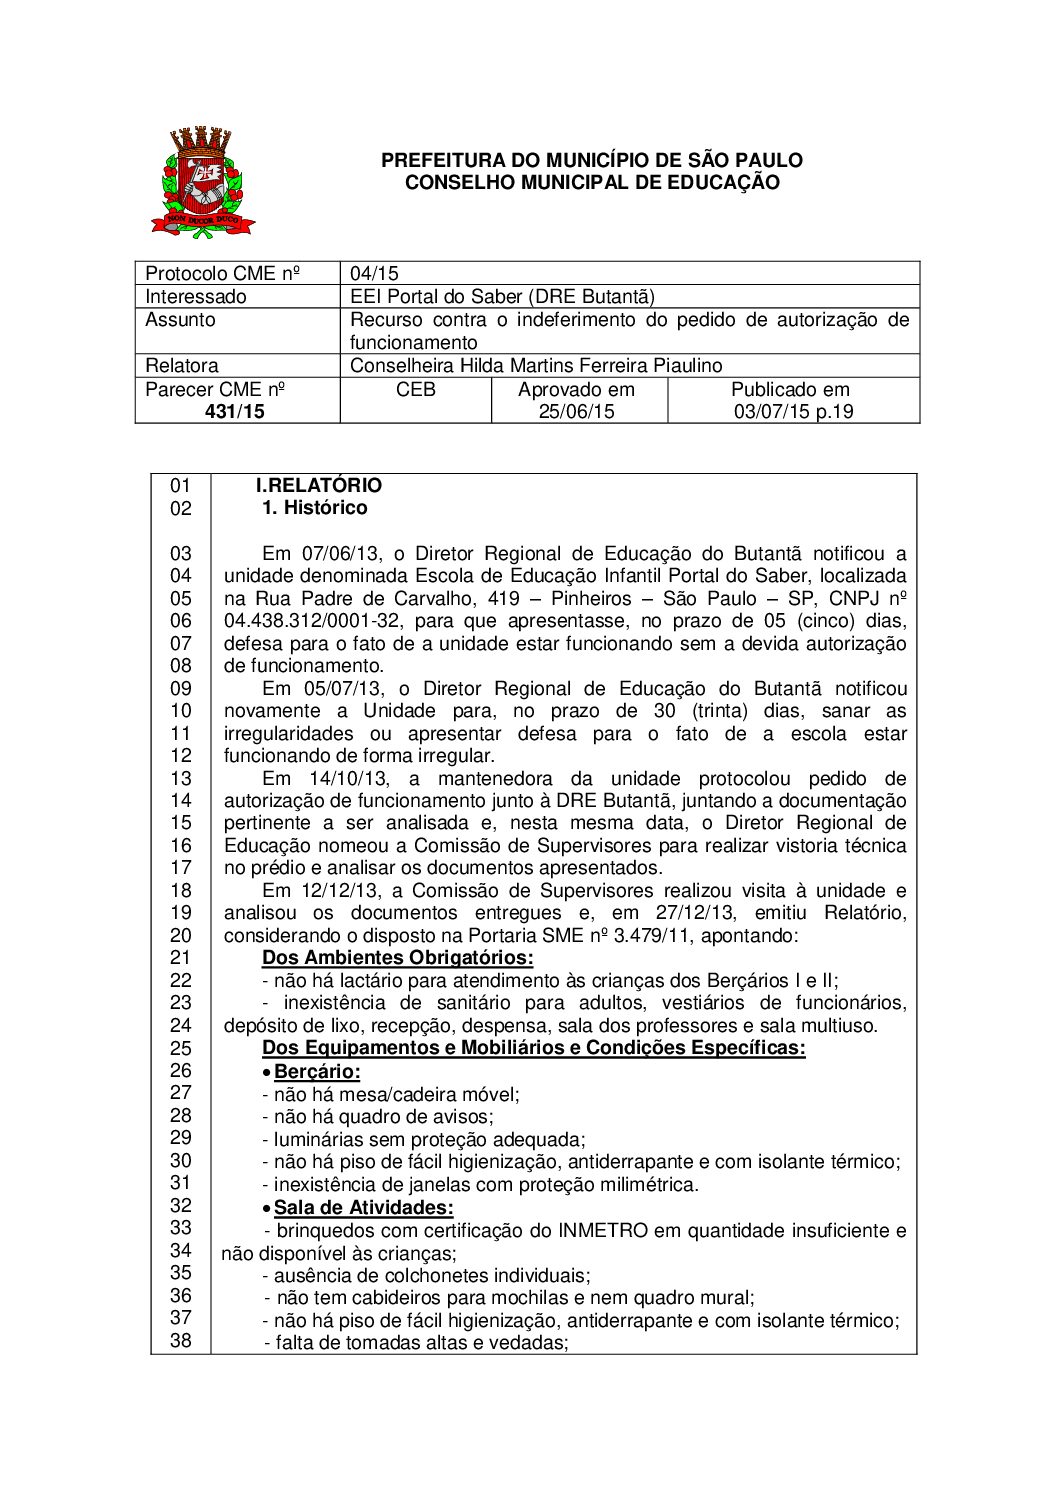 Parecer CME nº 431/2015 - EEI Portal do Saber (DRE Butantã) - Recurso contra o indeferimento do pedido de autorização de funcionamento 